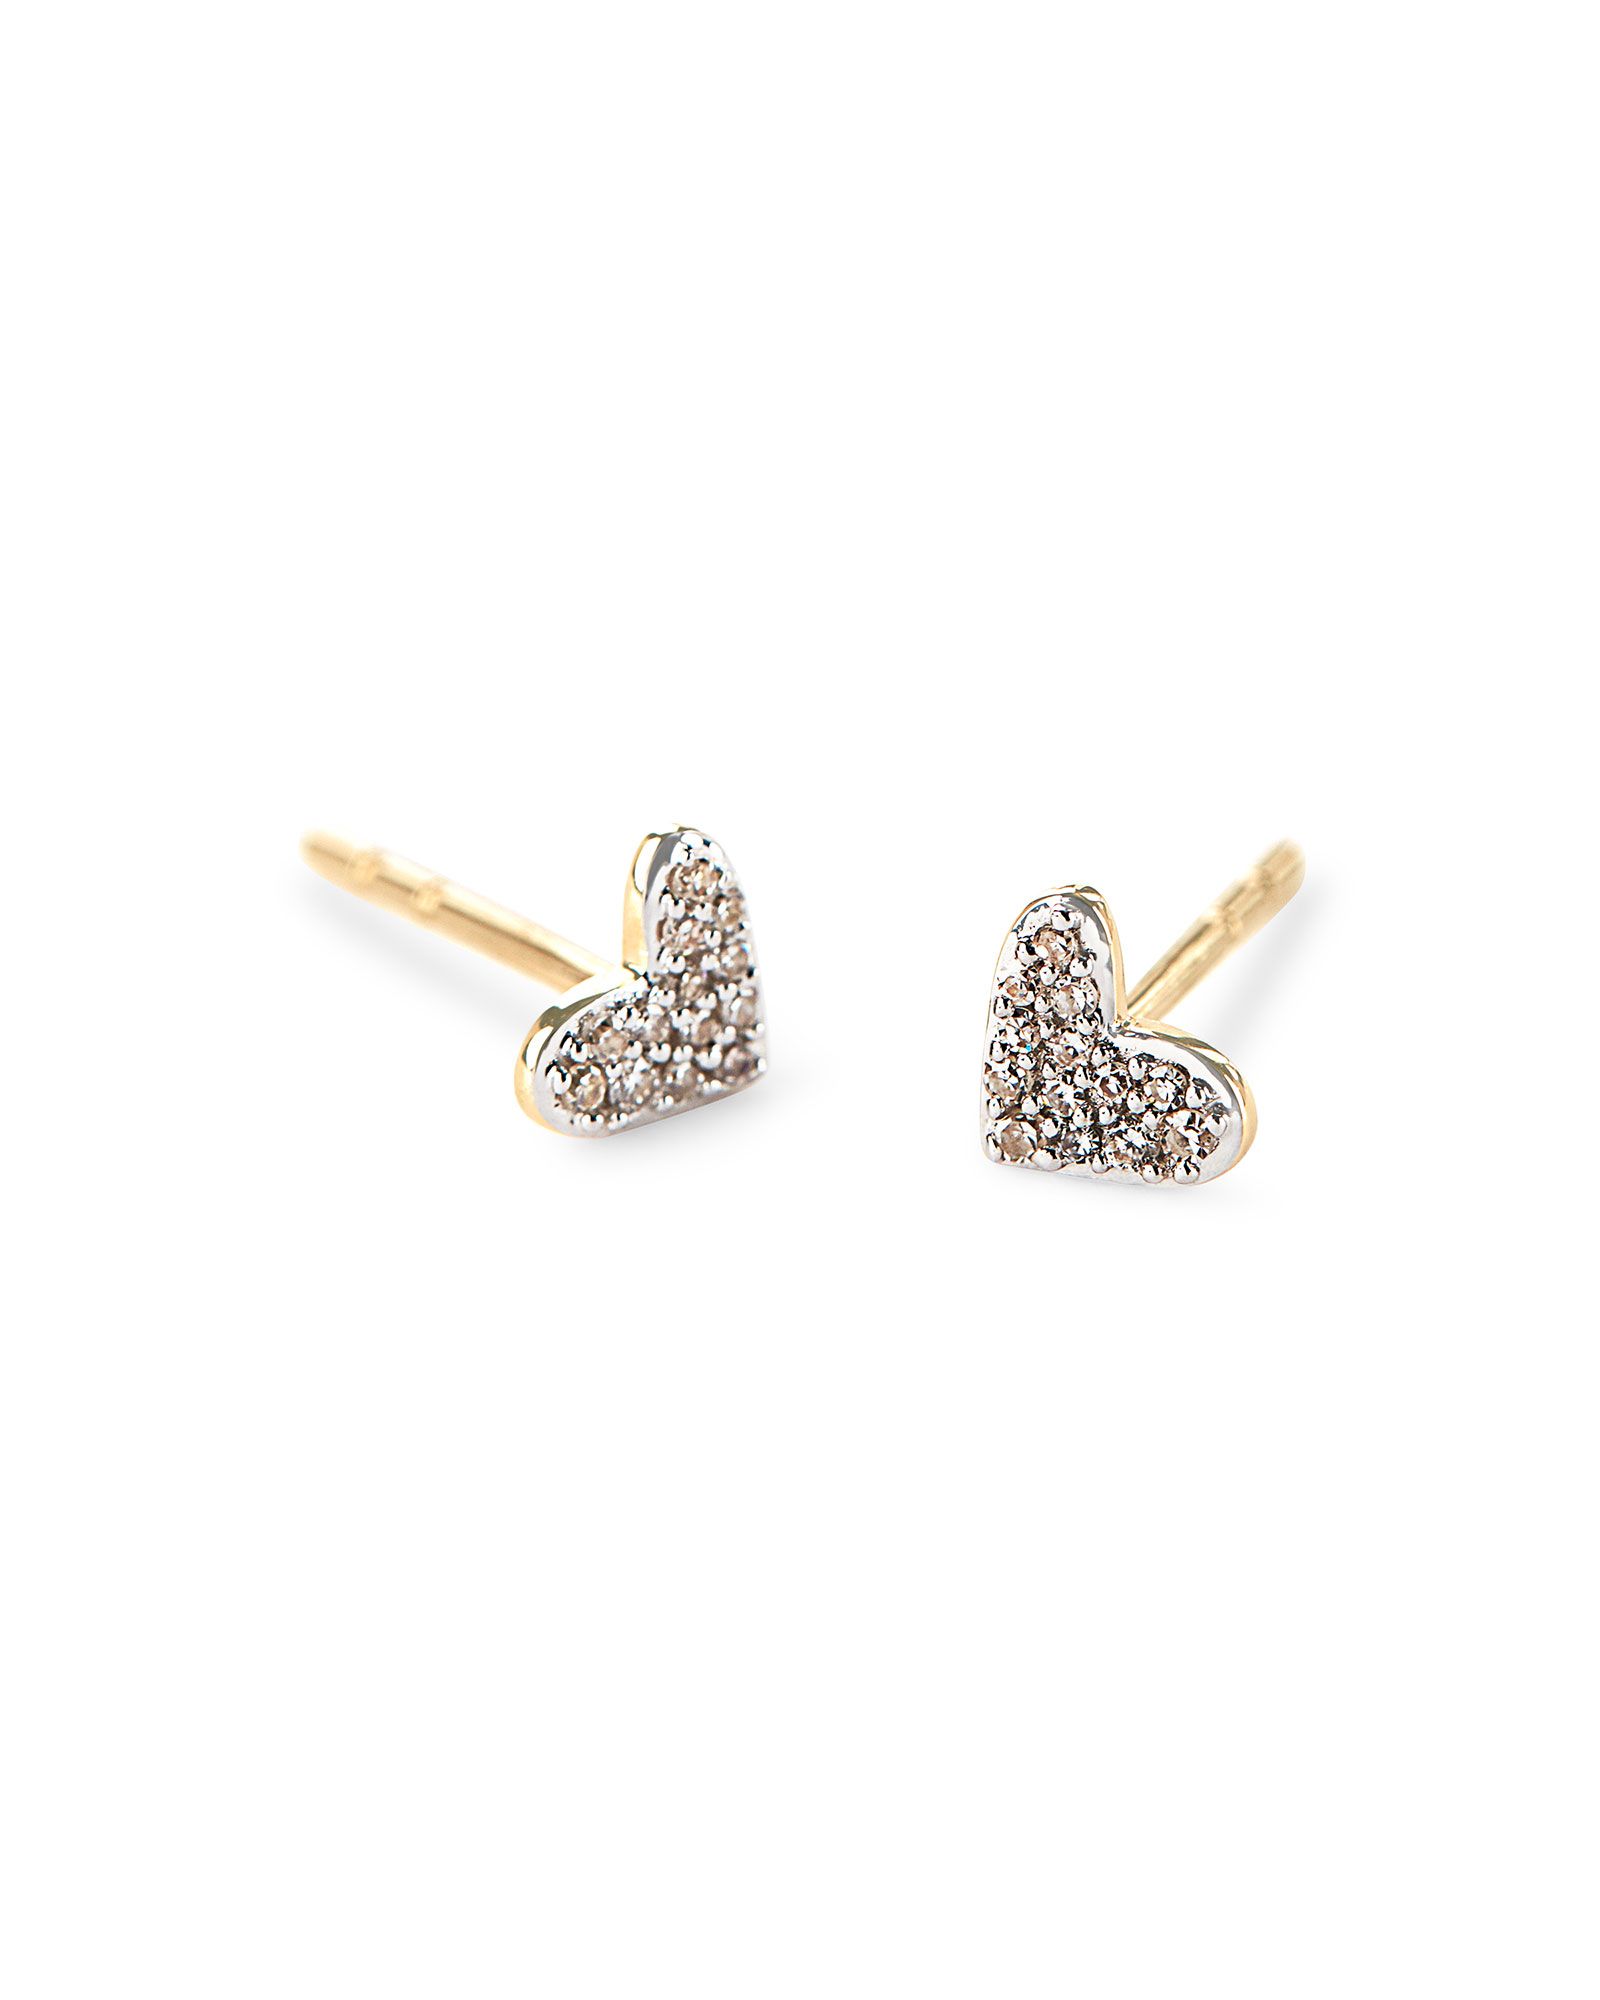 Heart 14k Yellow Gold Stud Earrings in White Diamonds | Kendra Scott | Kendra Scott